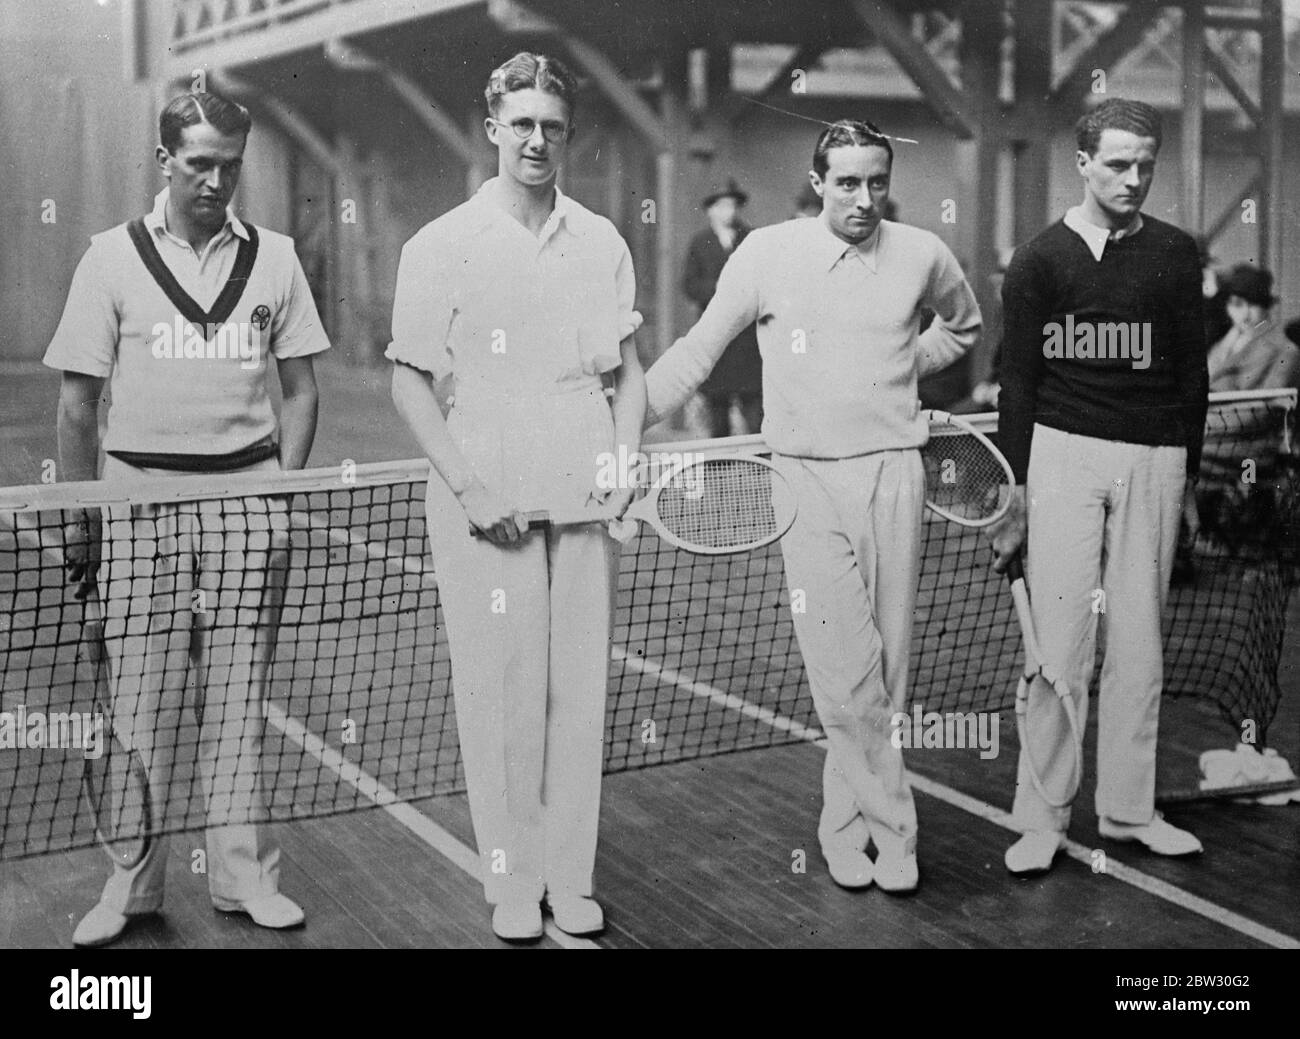 Paris London Tennis Spiele in Paris geöffnet. Von links nach rechts H N Lee und H K Lester, von England, P Peret und P Golschmidt von Frankreich, kurz vor dem Start ihres Spiels im Tennisclub in Paris in der Paris gegen London Inter-City-Turniere. 19 März 1932 . Stockfoto